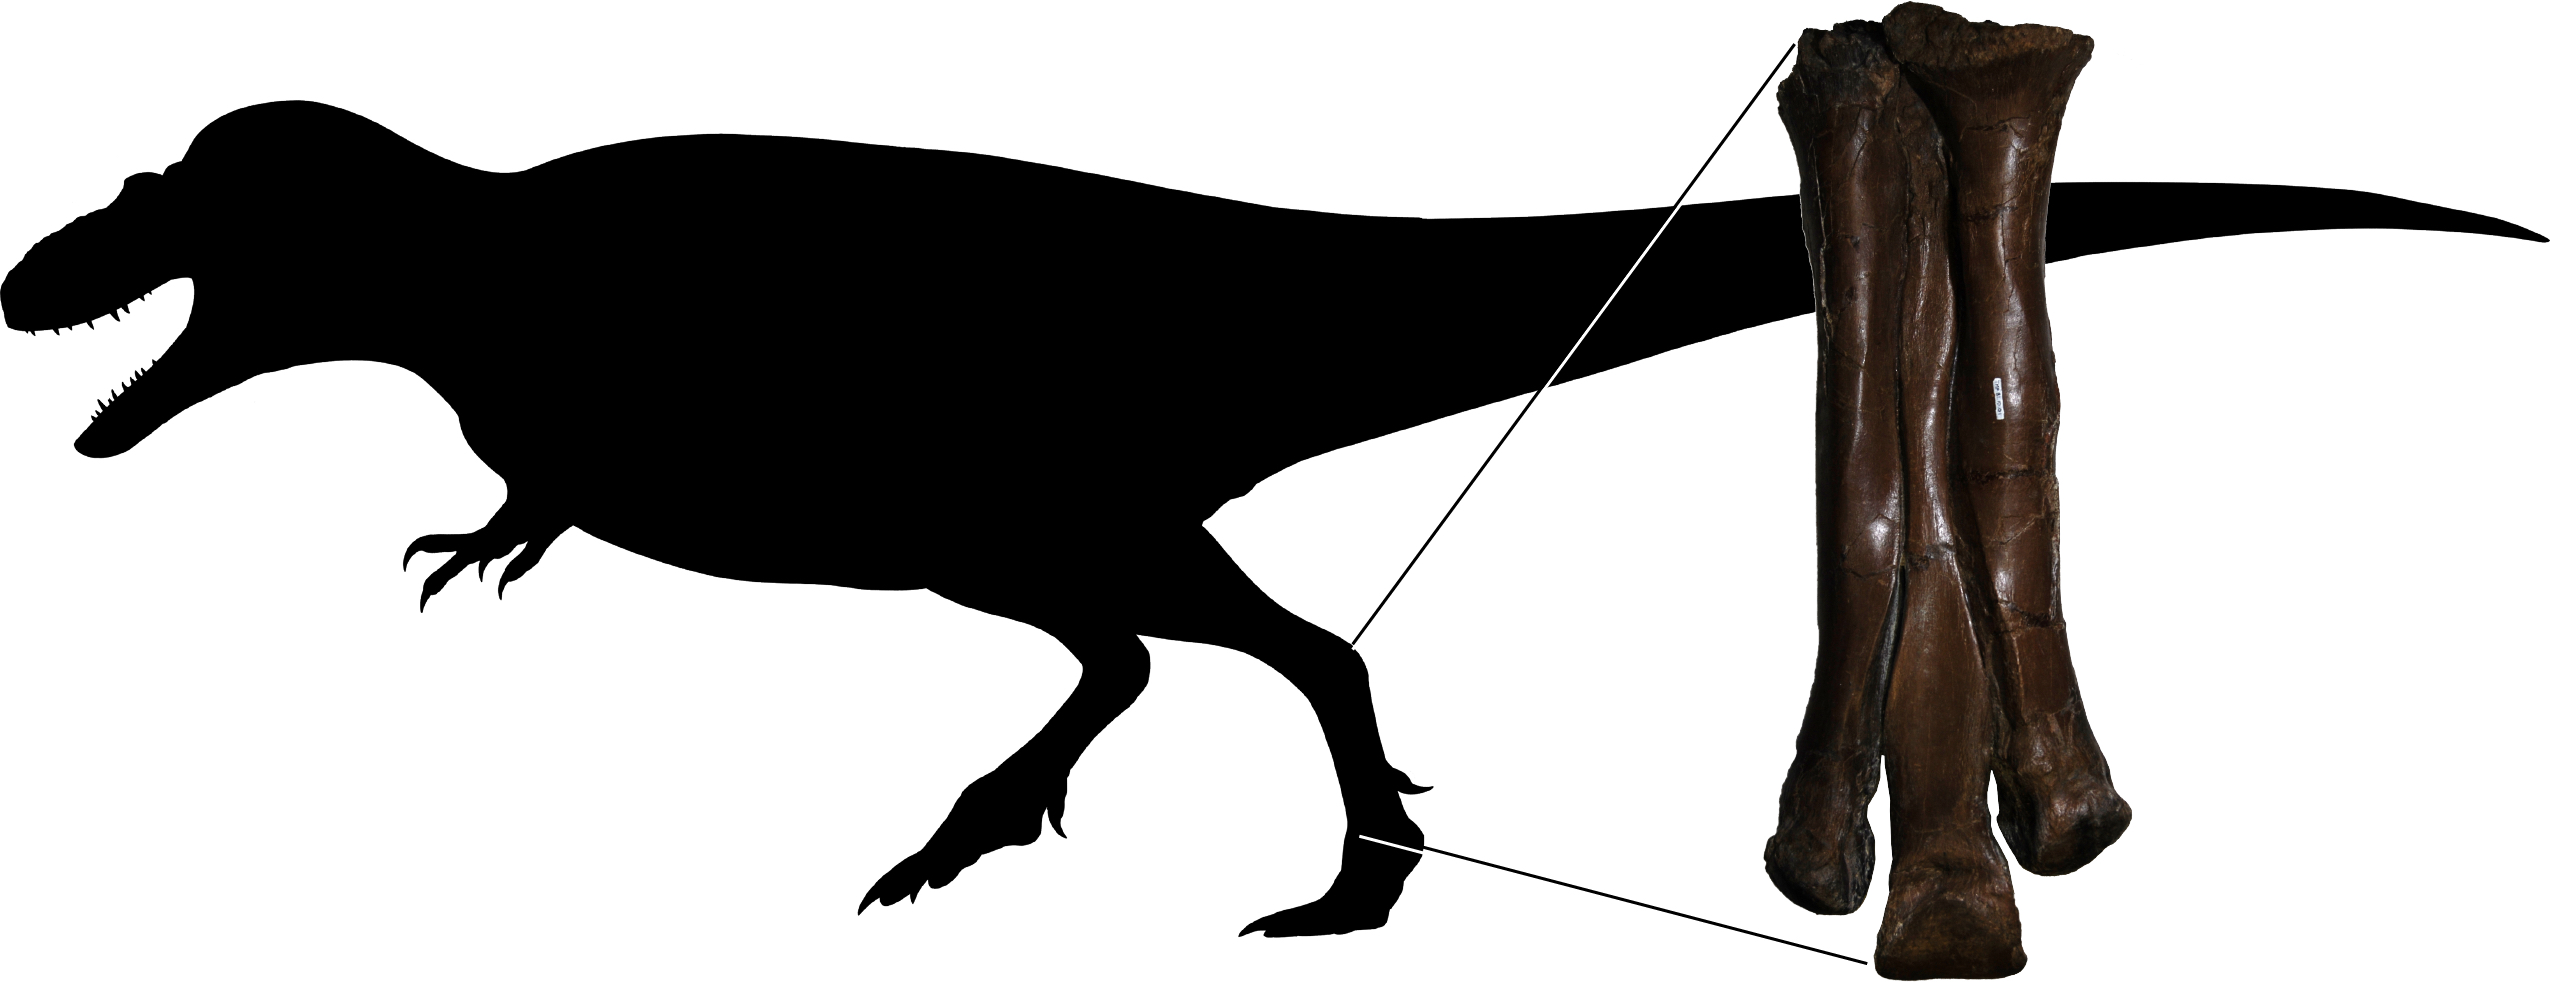 A tyrannosaur's foot bones